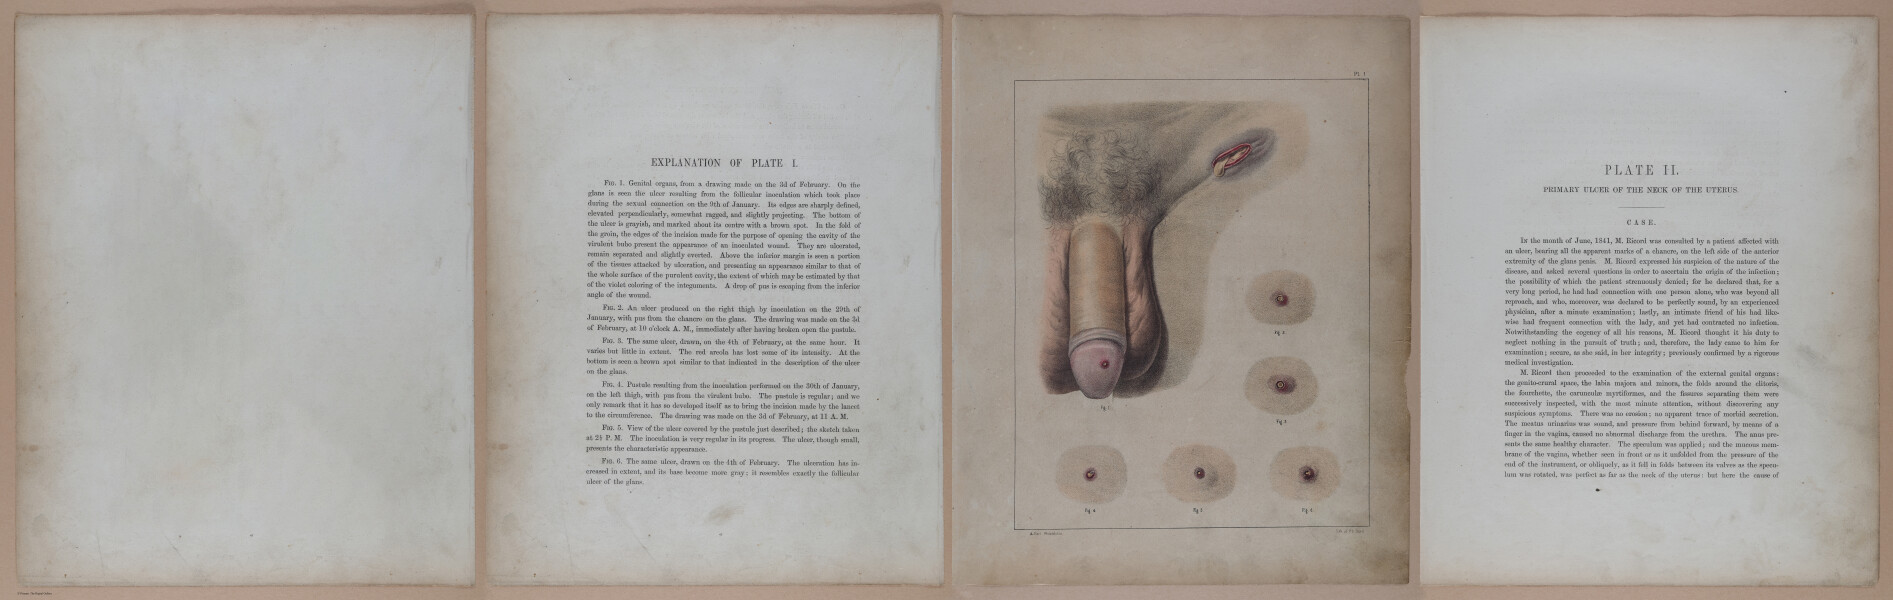 E345 - Illustrations of Syphilitic - i11859-11860-11861